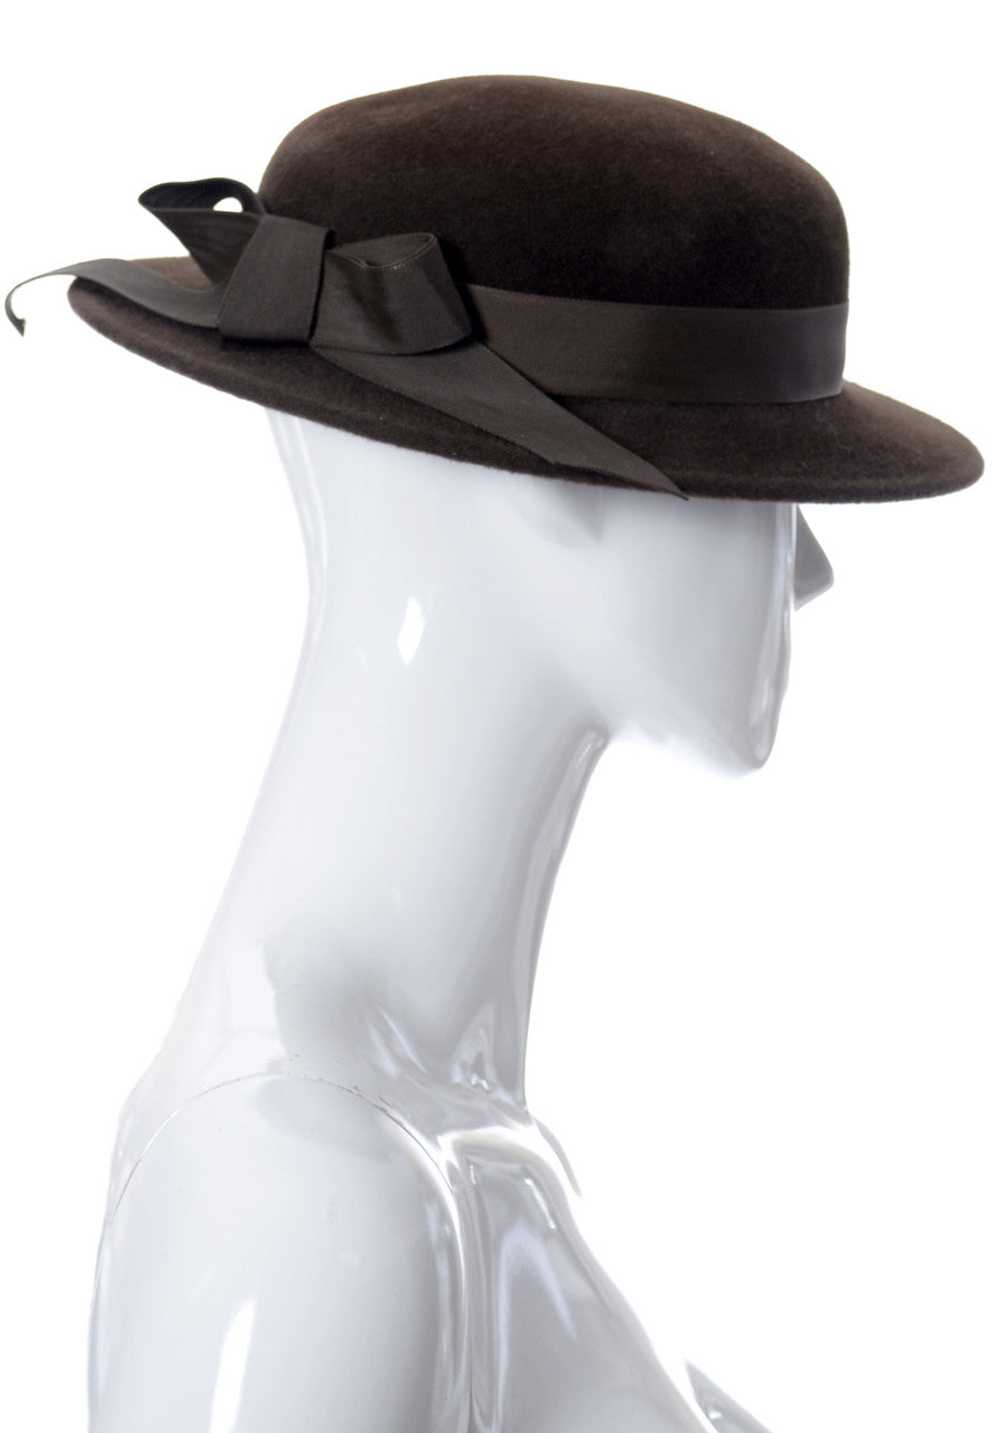 Frank Olive I Magnin Vintage Brown Wool Felt Hat - image 2